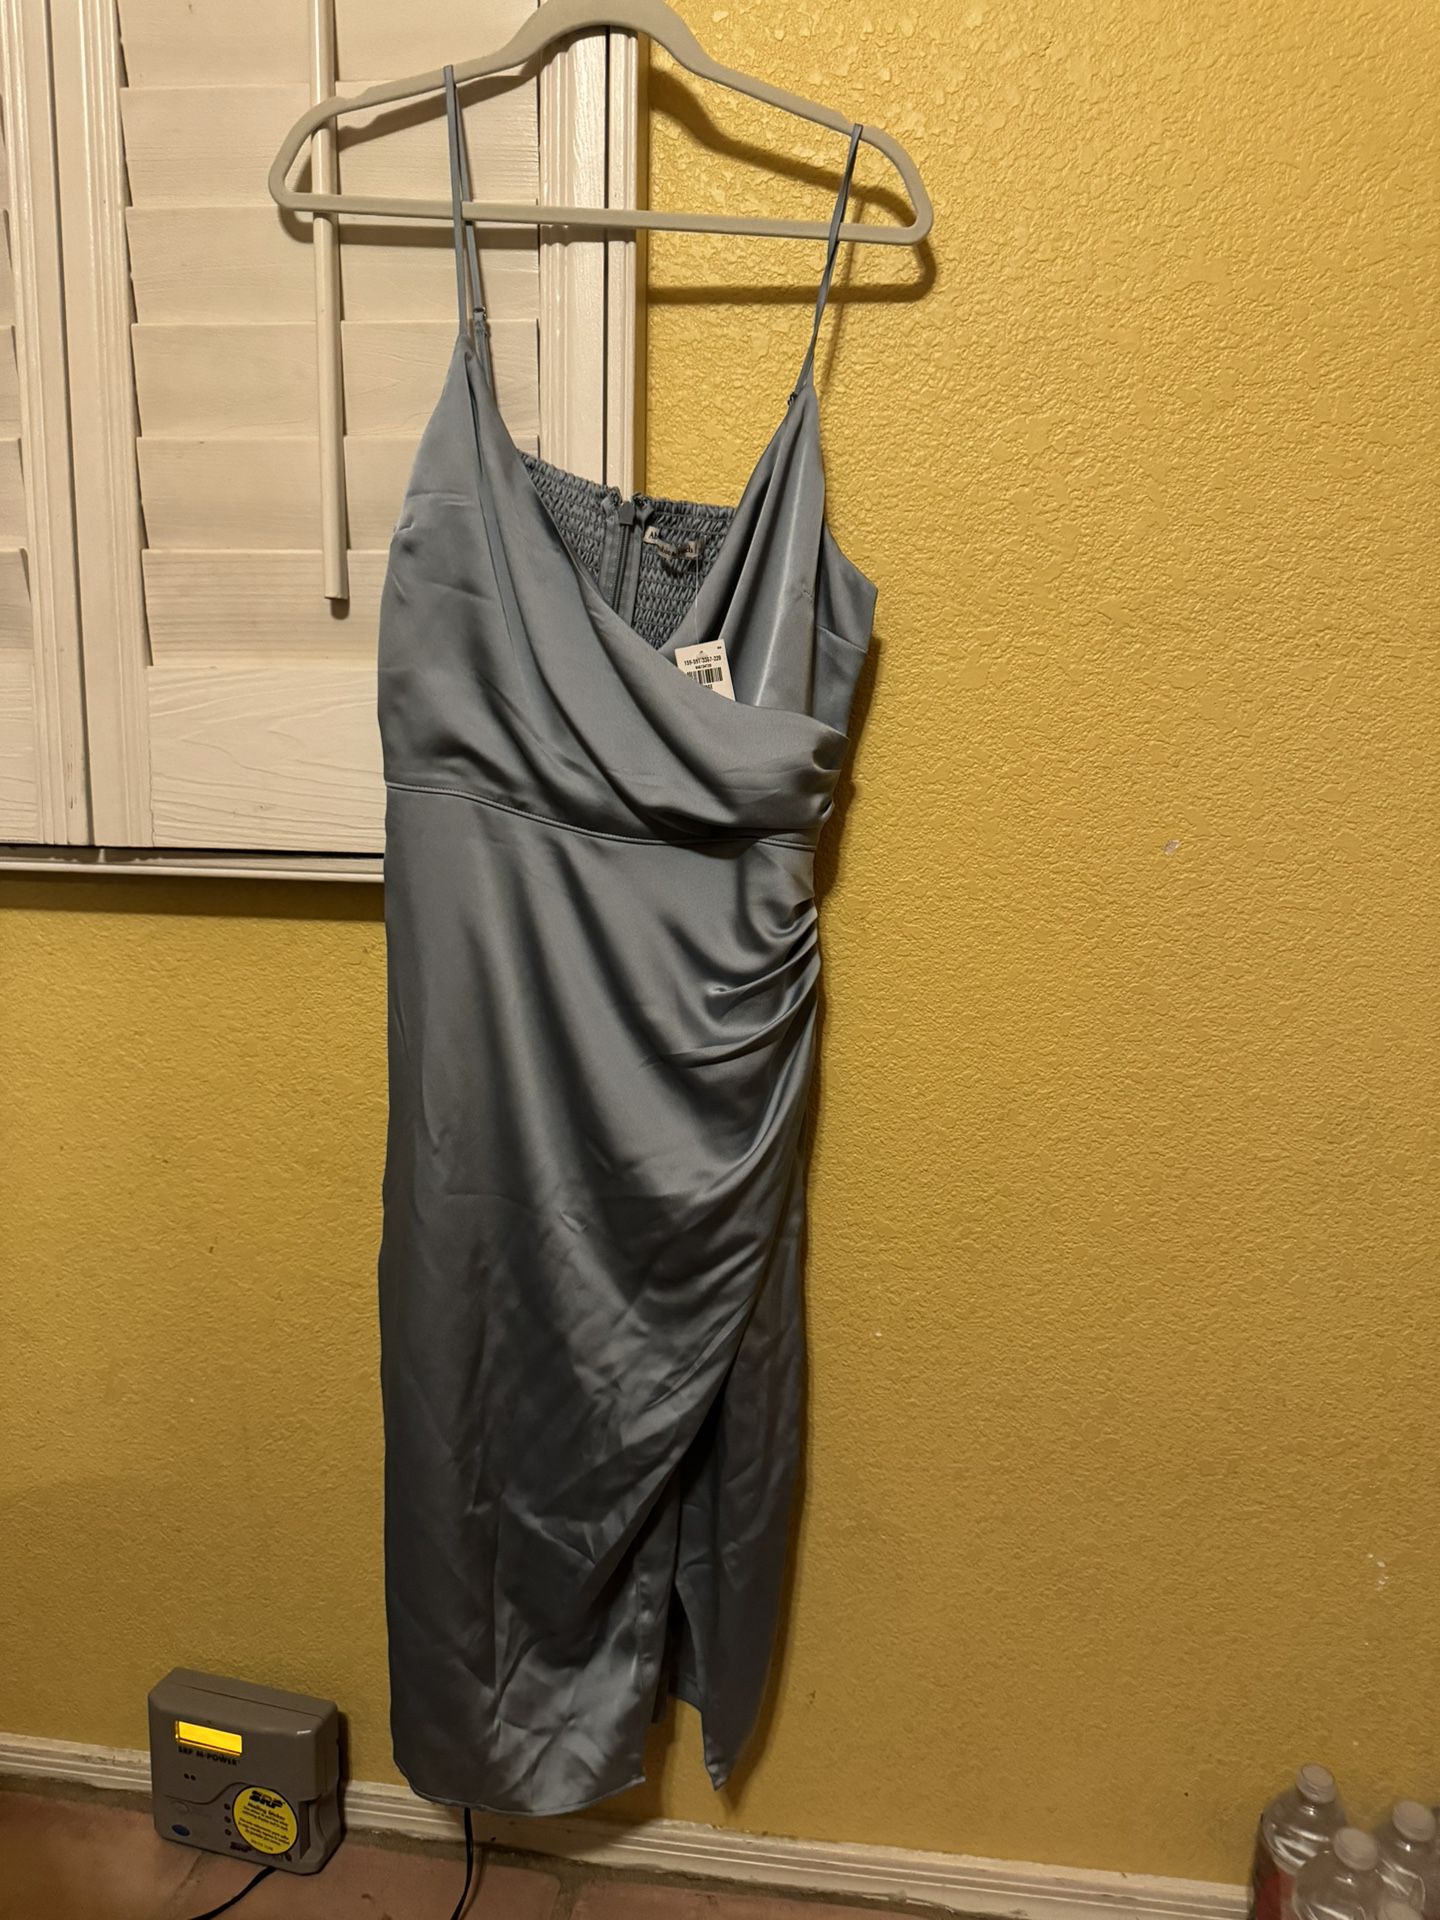 Grey dress